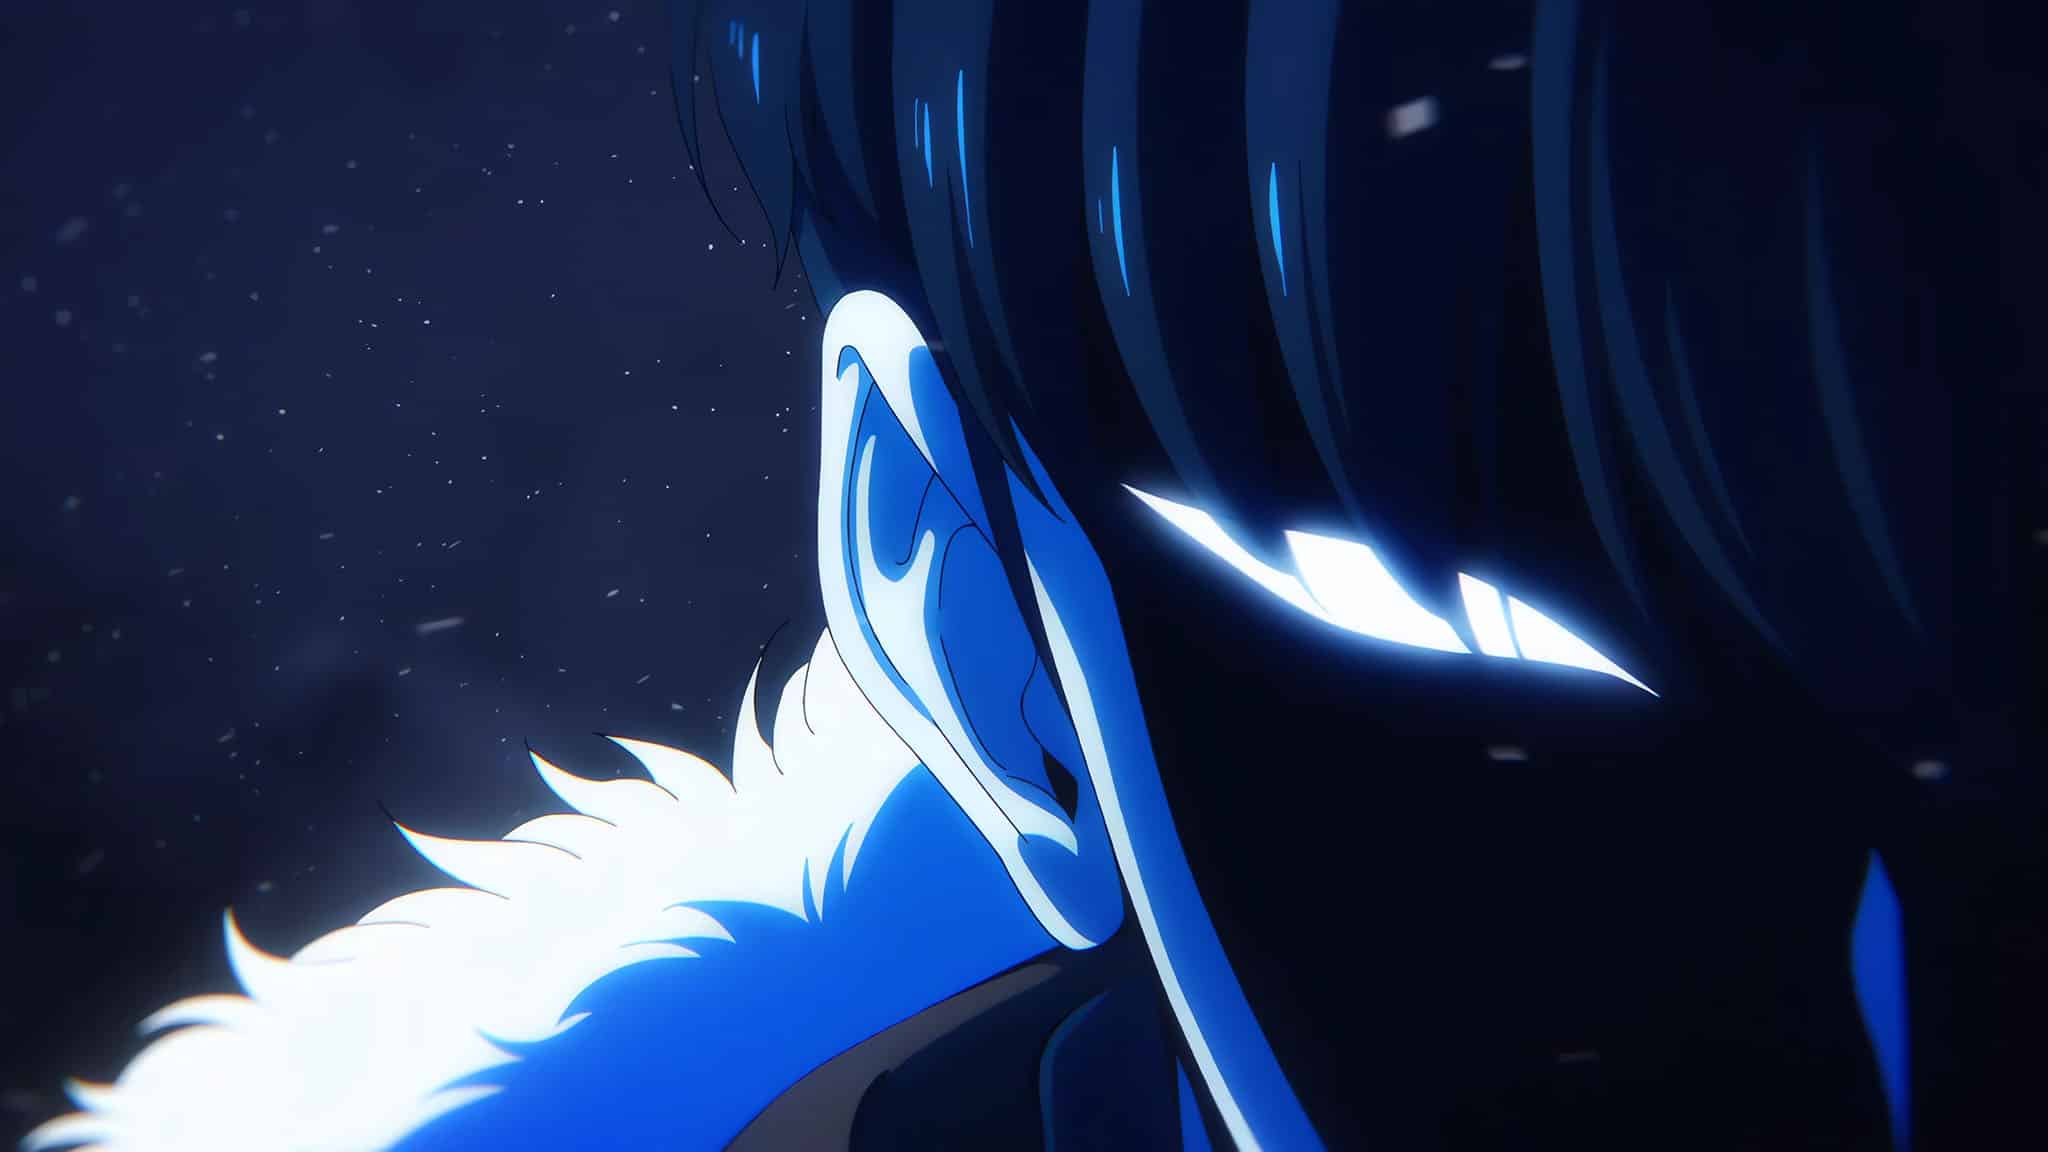 Premier trailer pour la saison 2 de l'anime Solo Leveling.